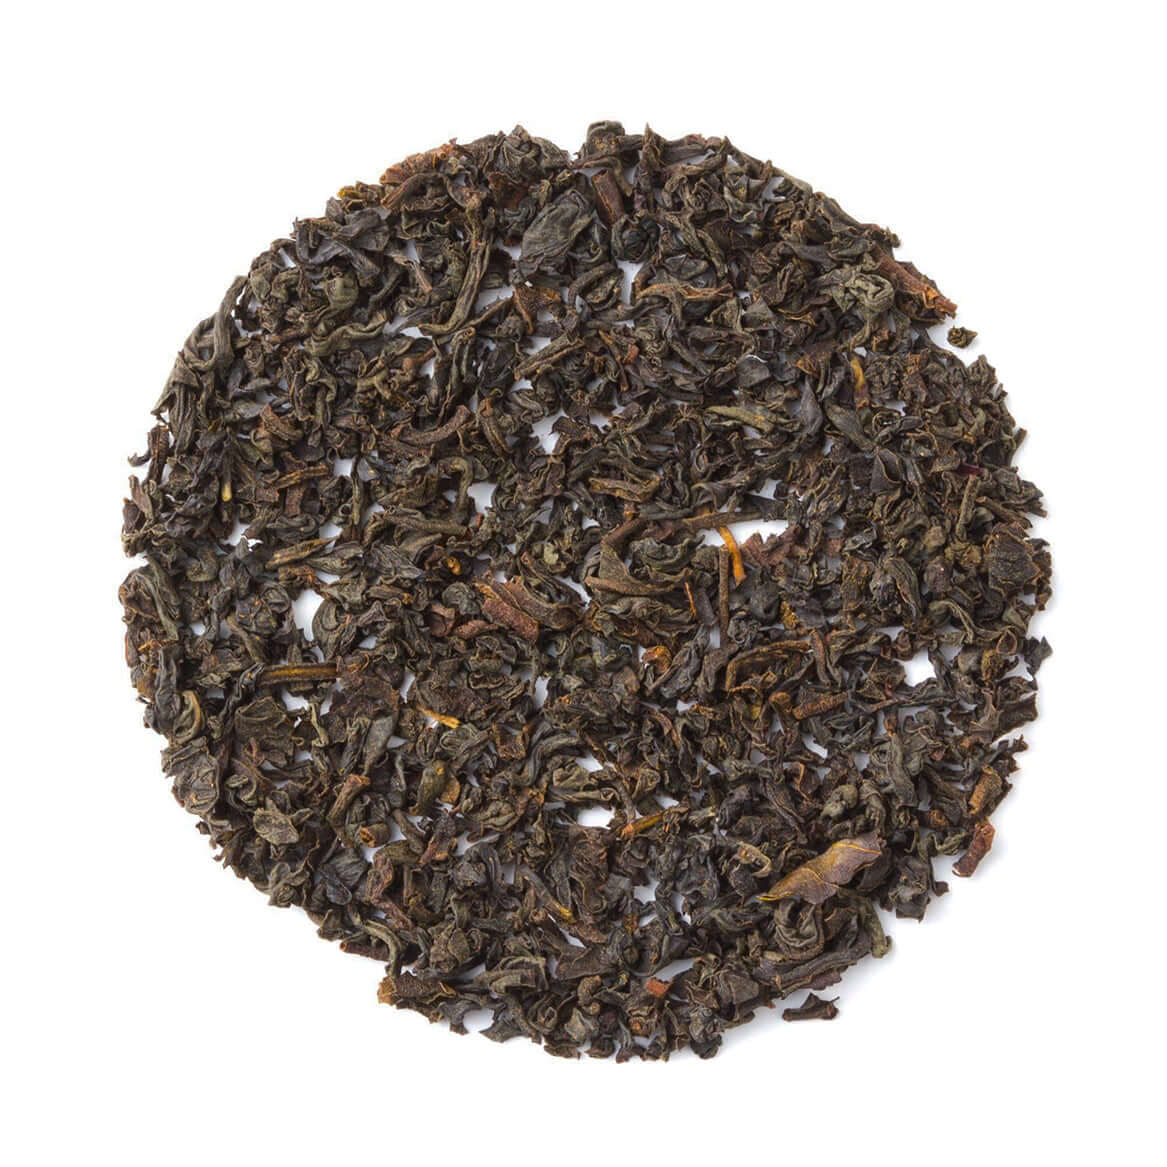 Organic Earl Grey - Loose Leaf Black Tea - Classic Black Tea | Heavenly Tea Leaves